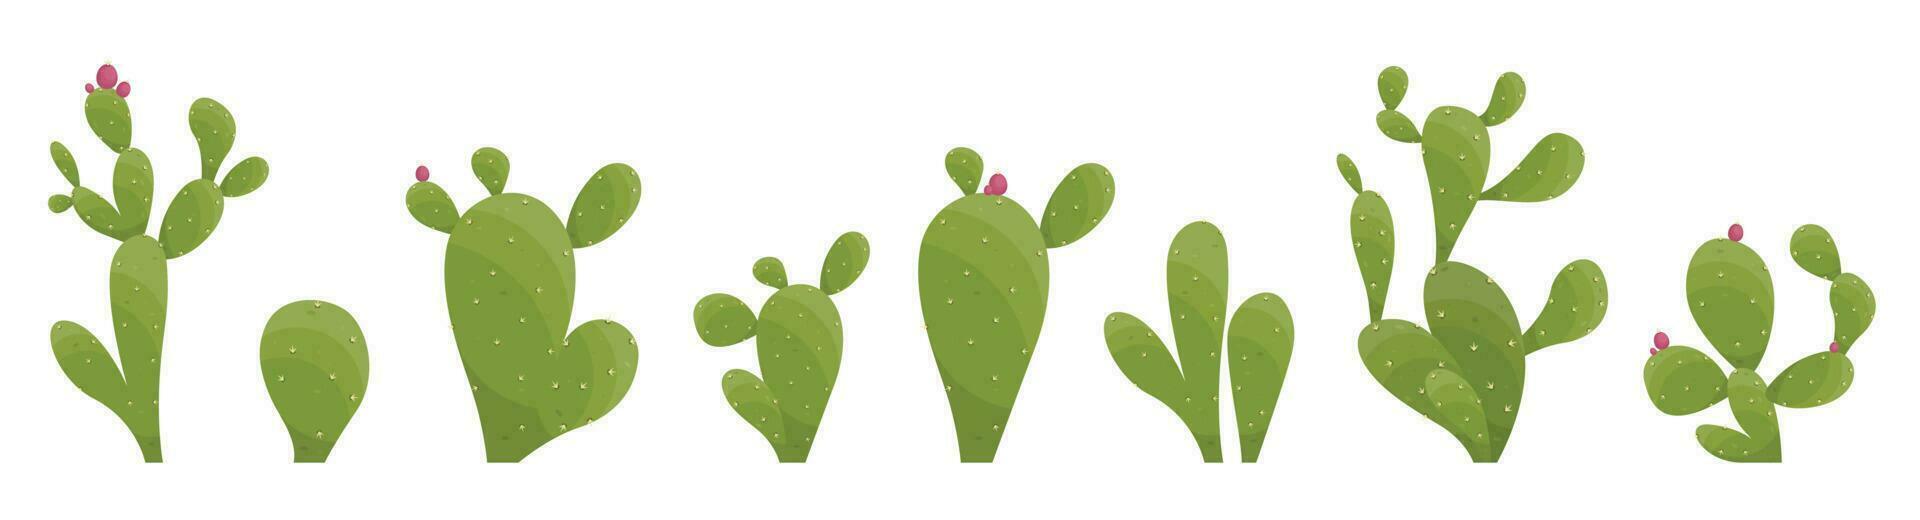 Karikatur Wüste Kaktus Pflanzen isoliert auf Weiß. Wüste Pflanzen Vektor Illustration